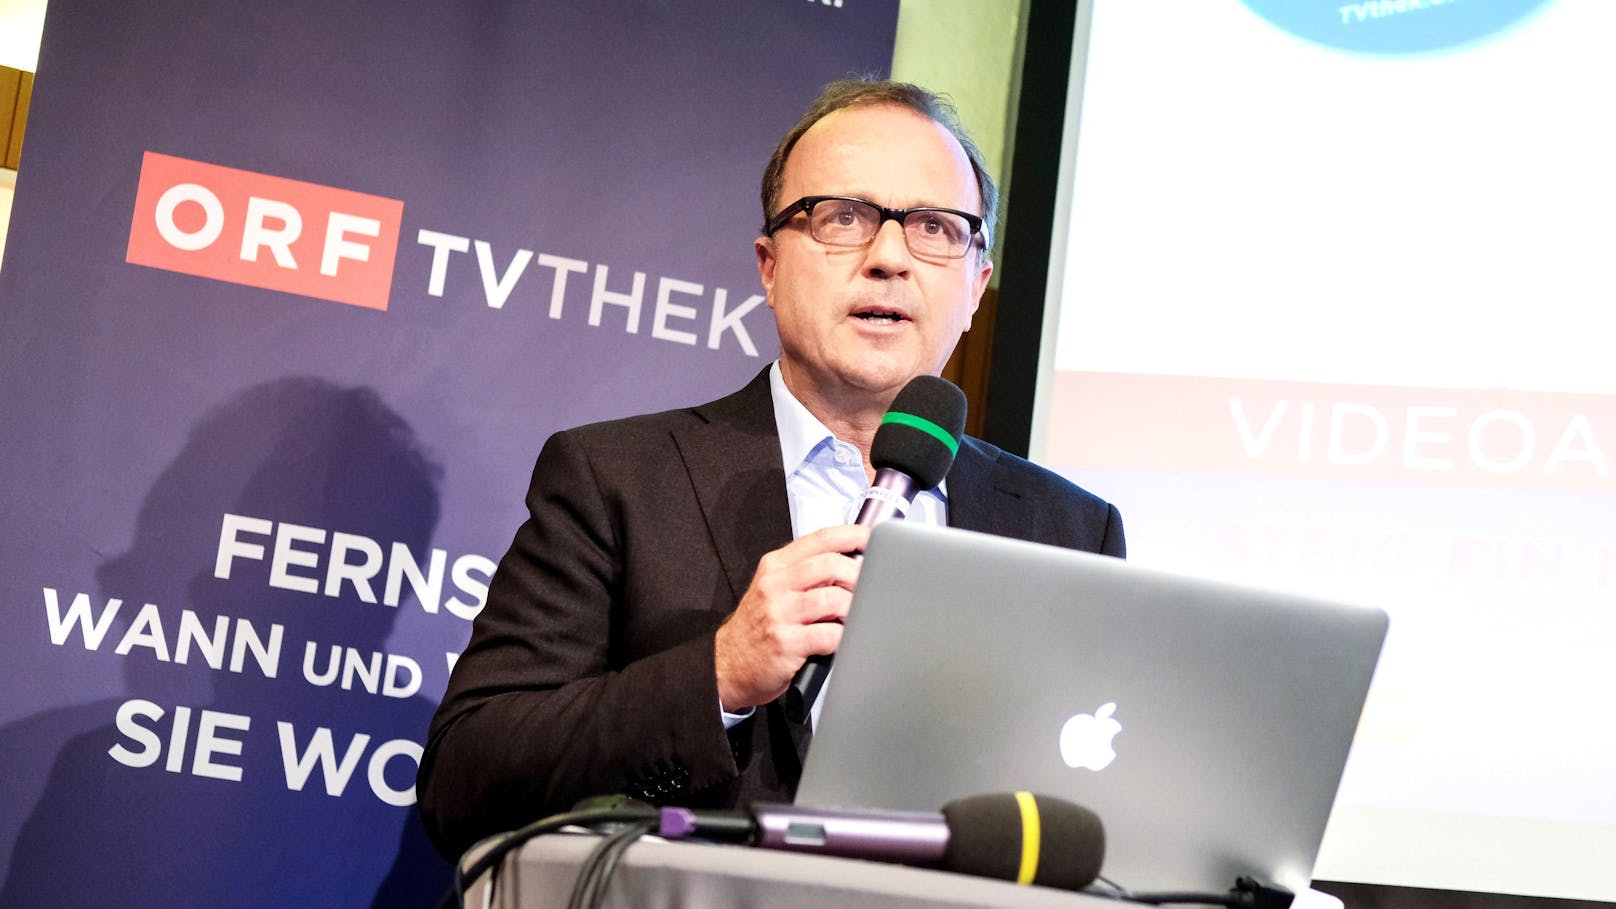 Thomas Prantner ist der Gründer der ORF-TVthek und Direktor des Bereichs Online und Neue Medien.